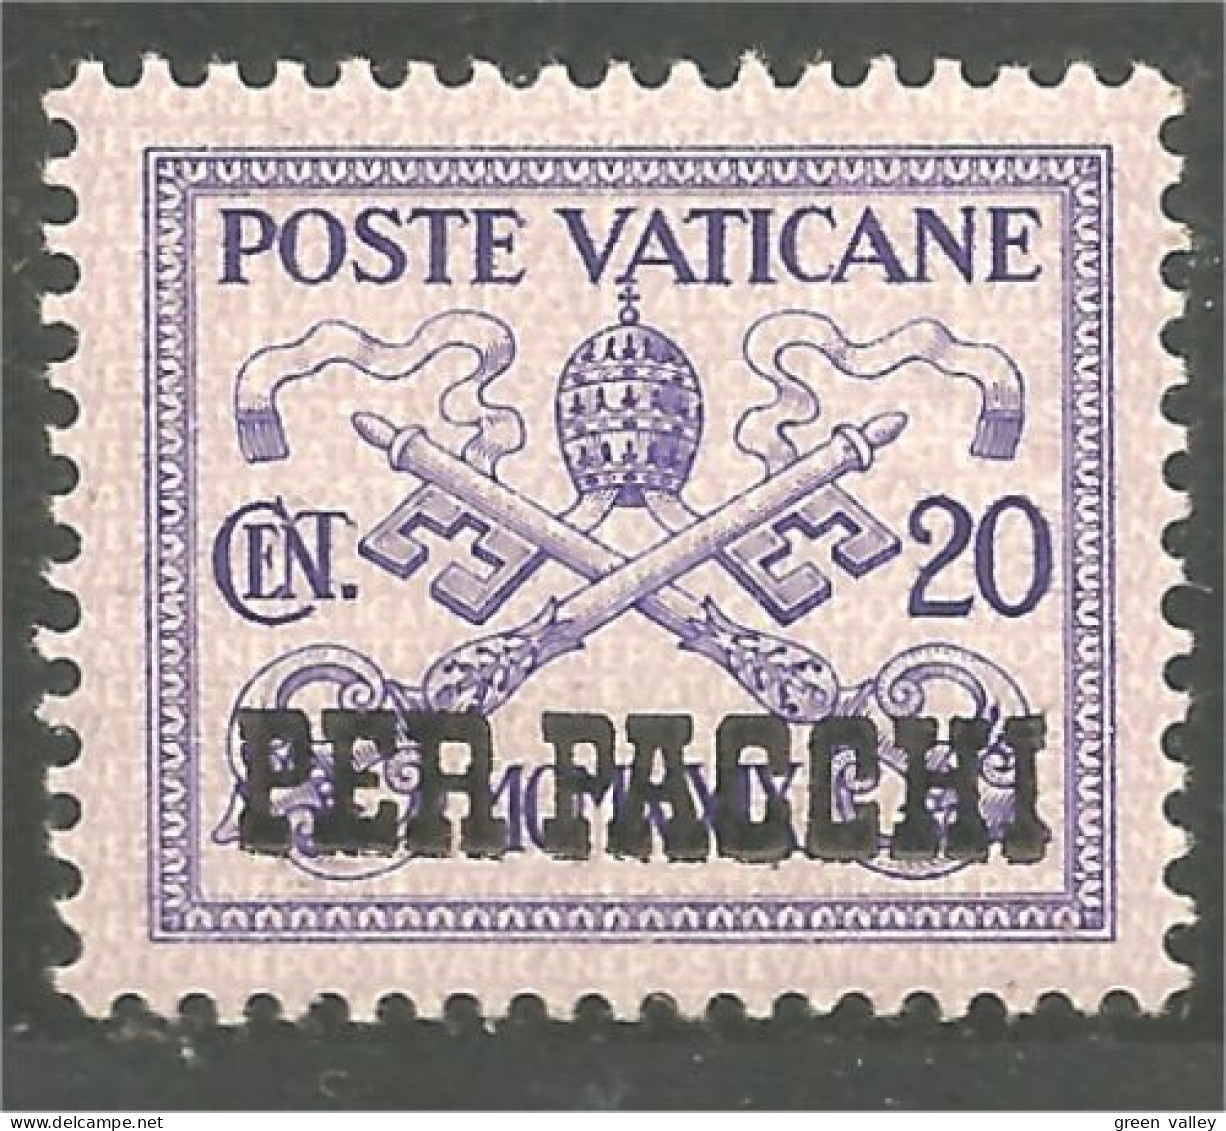 922 Vatican 20c Parcel Colis MH * Neuf CH (VAT-152) - Paquetes Postales